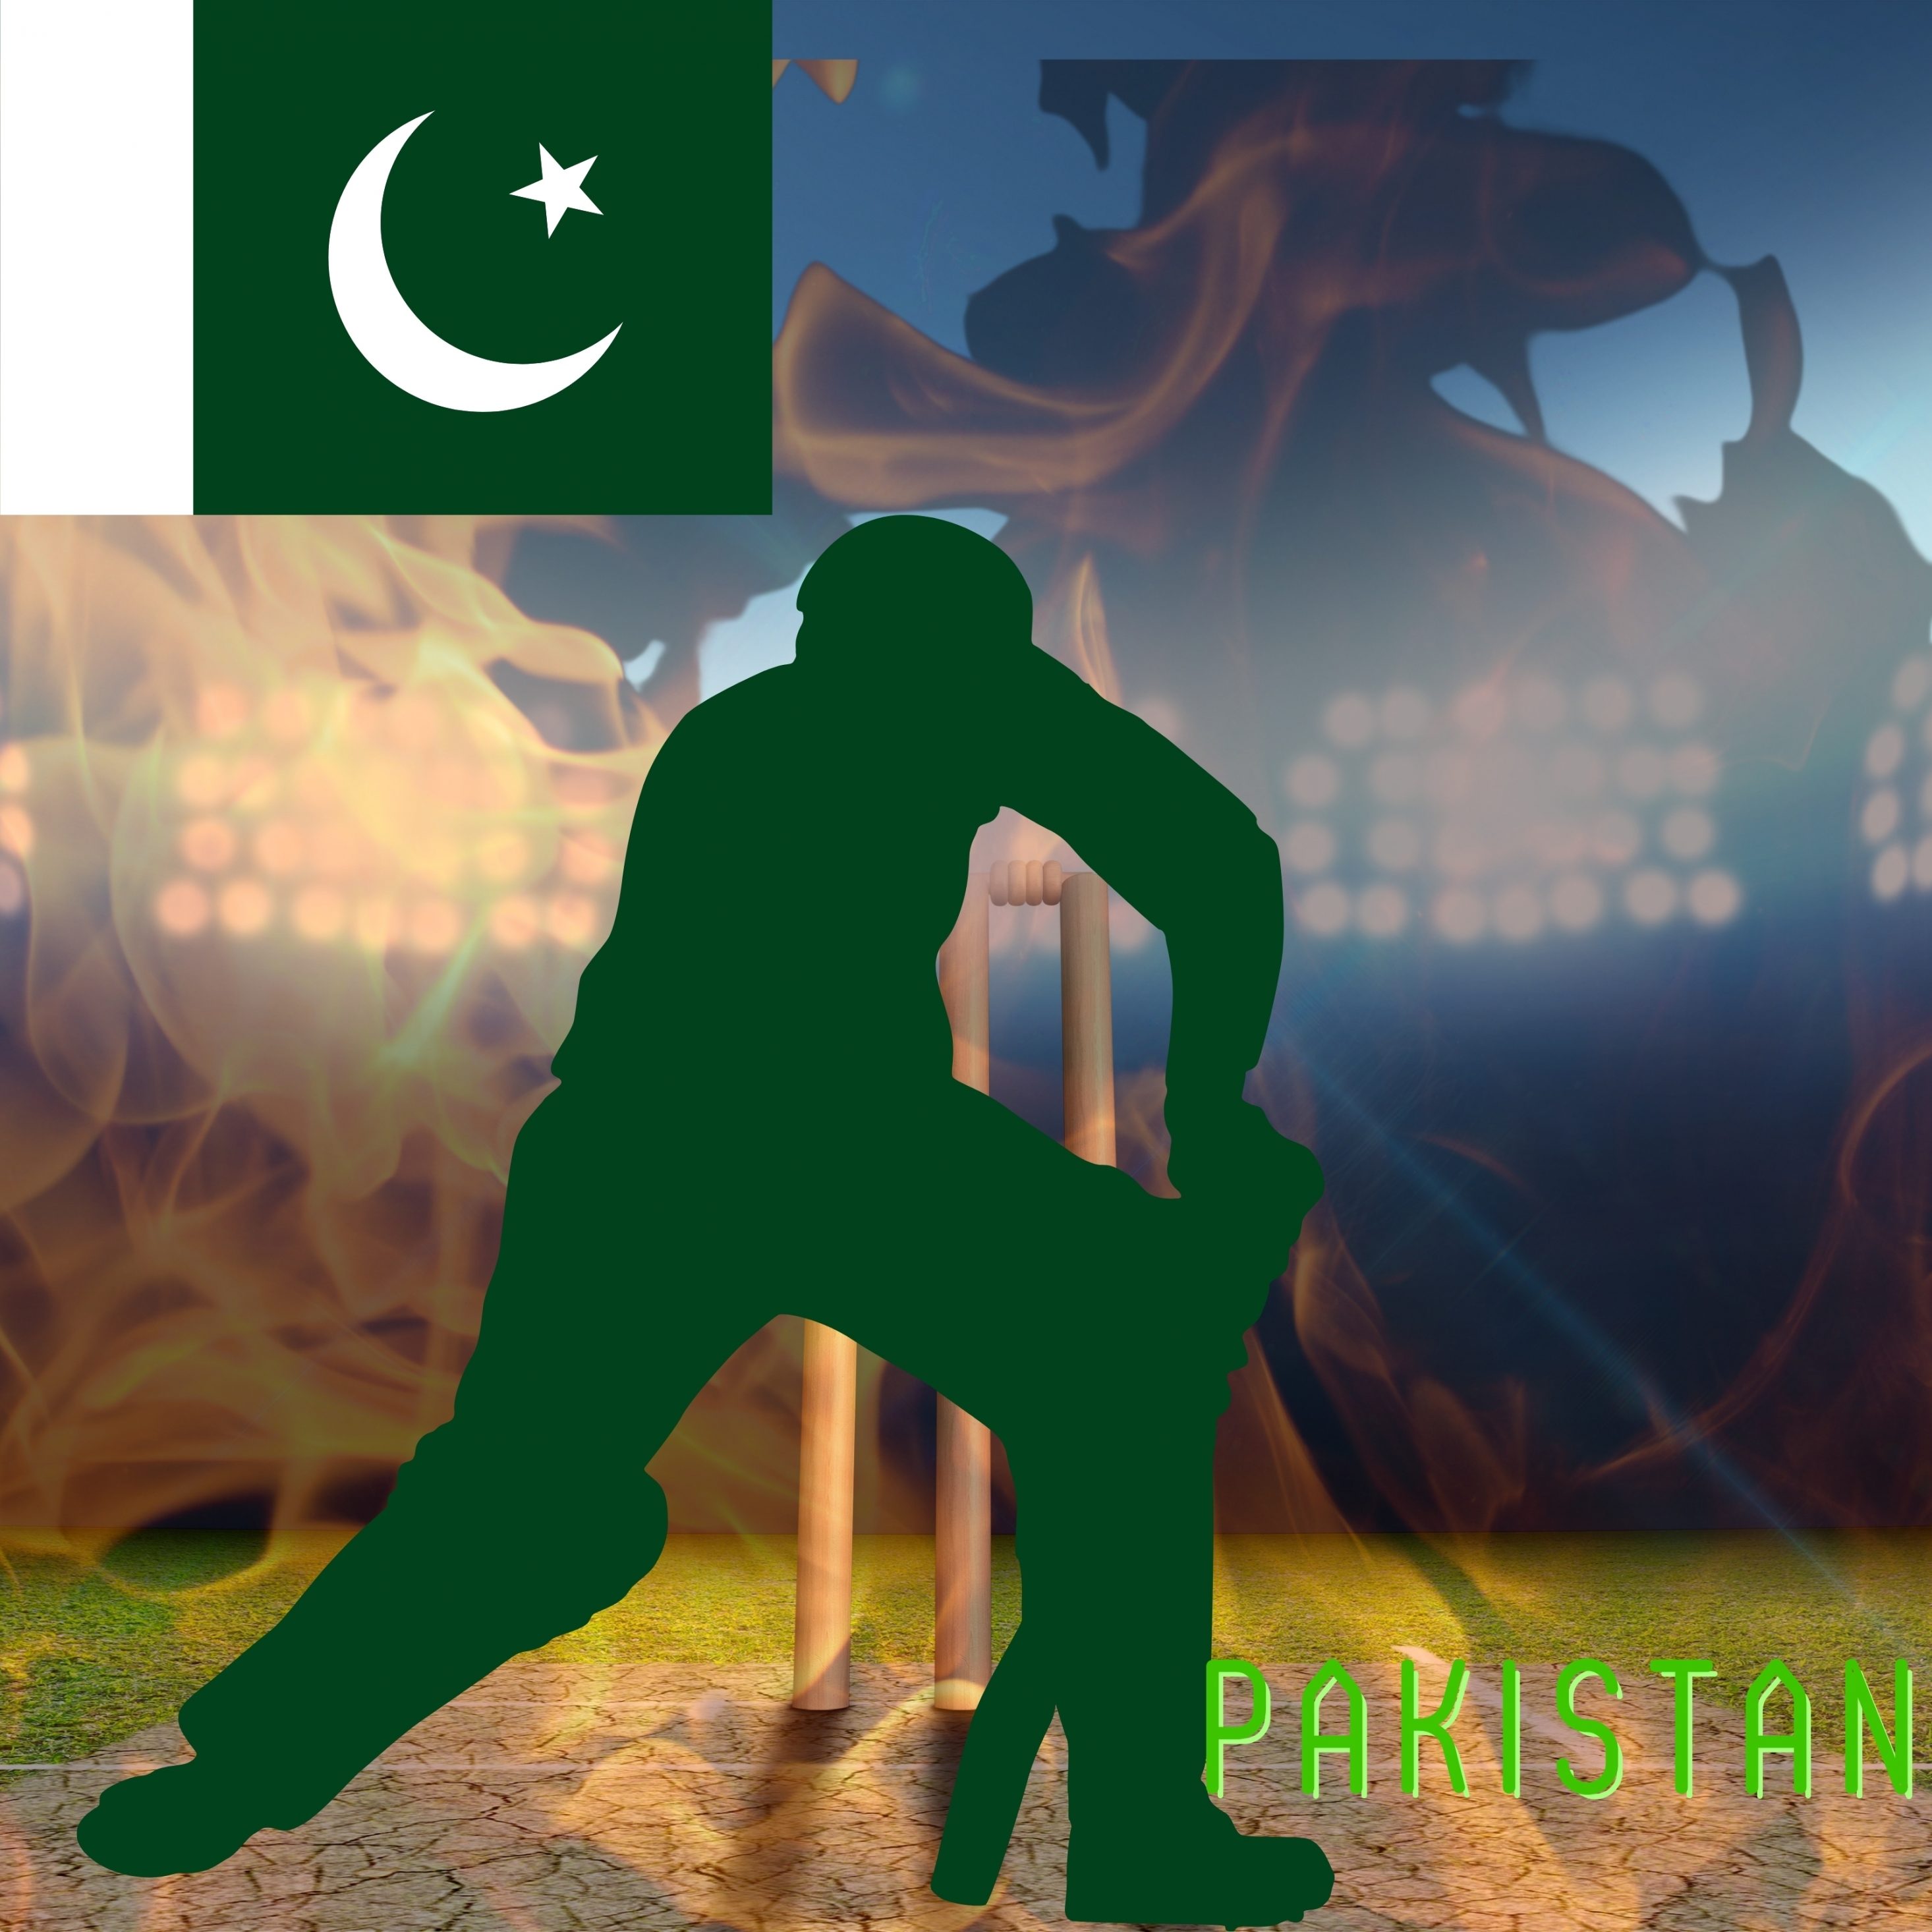 2932x2932 iPad Pro wallpaper 4k Pakistan Cricket Stadium iPad Wallpaper 2932x2932 pixels resolution